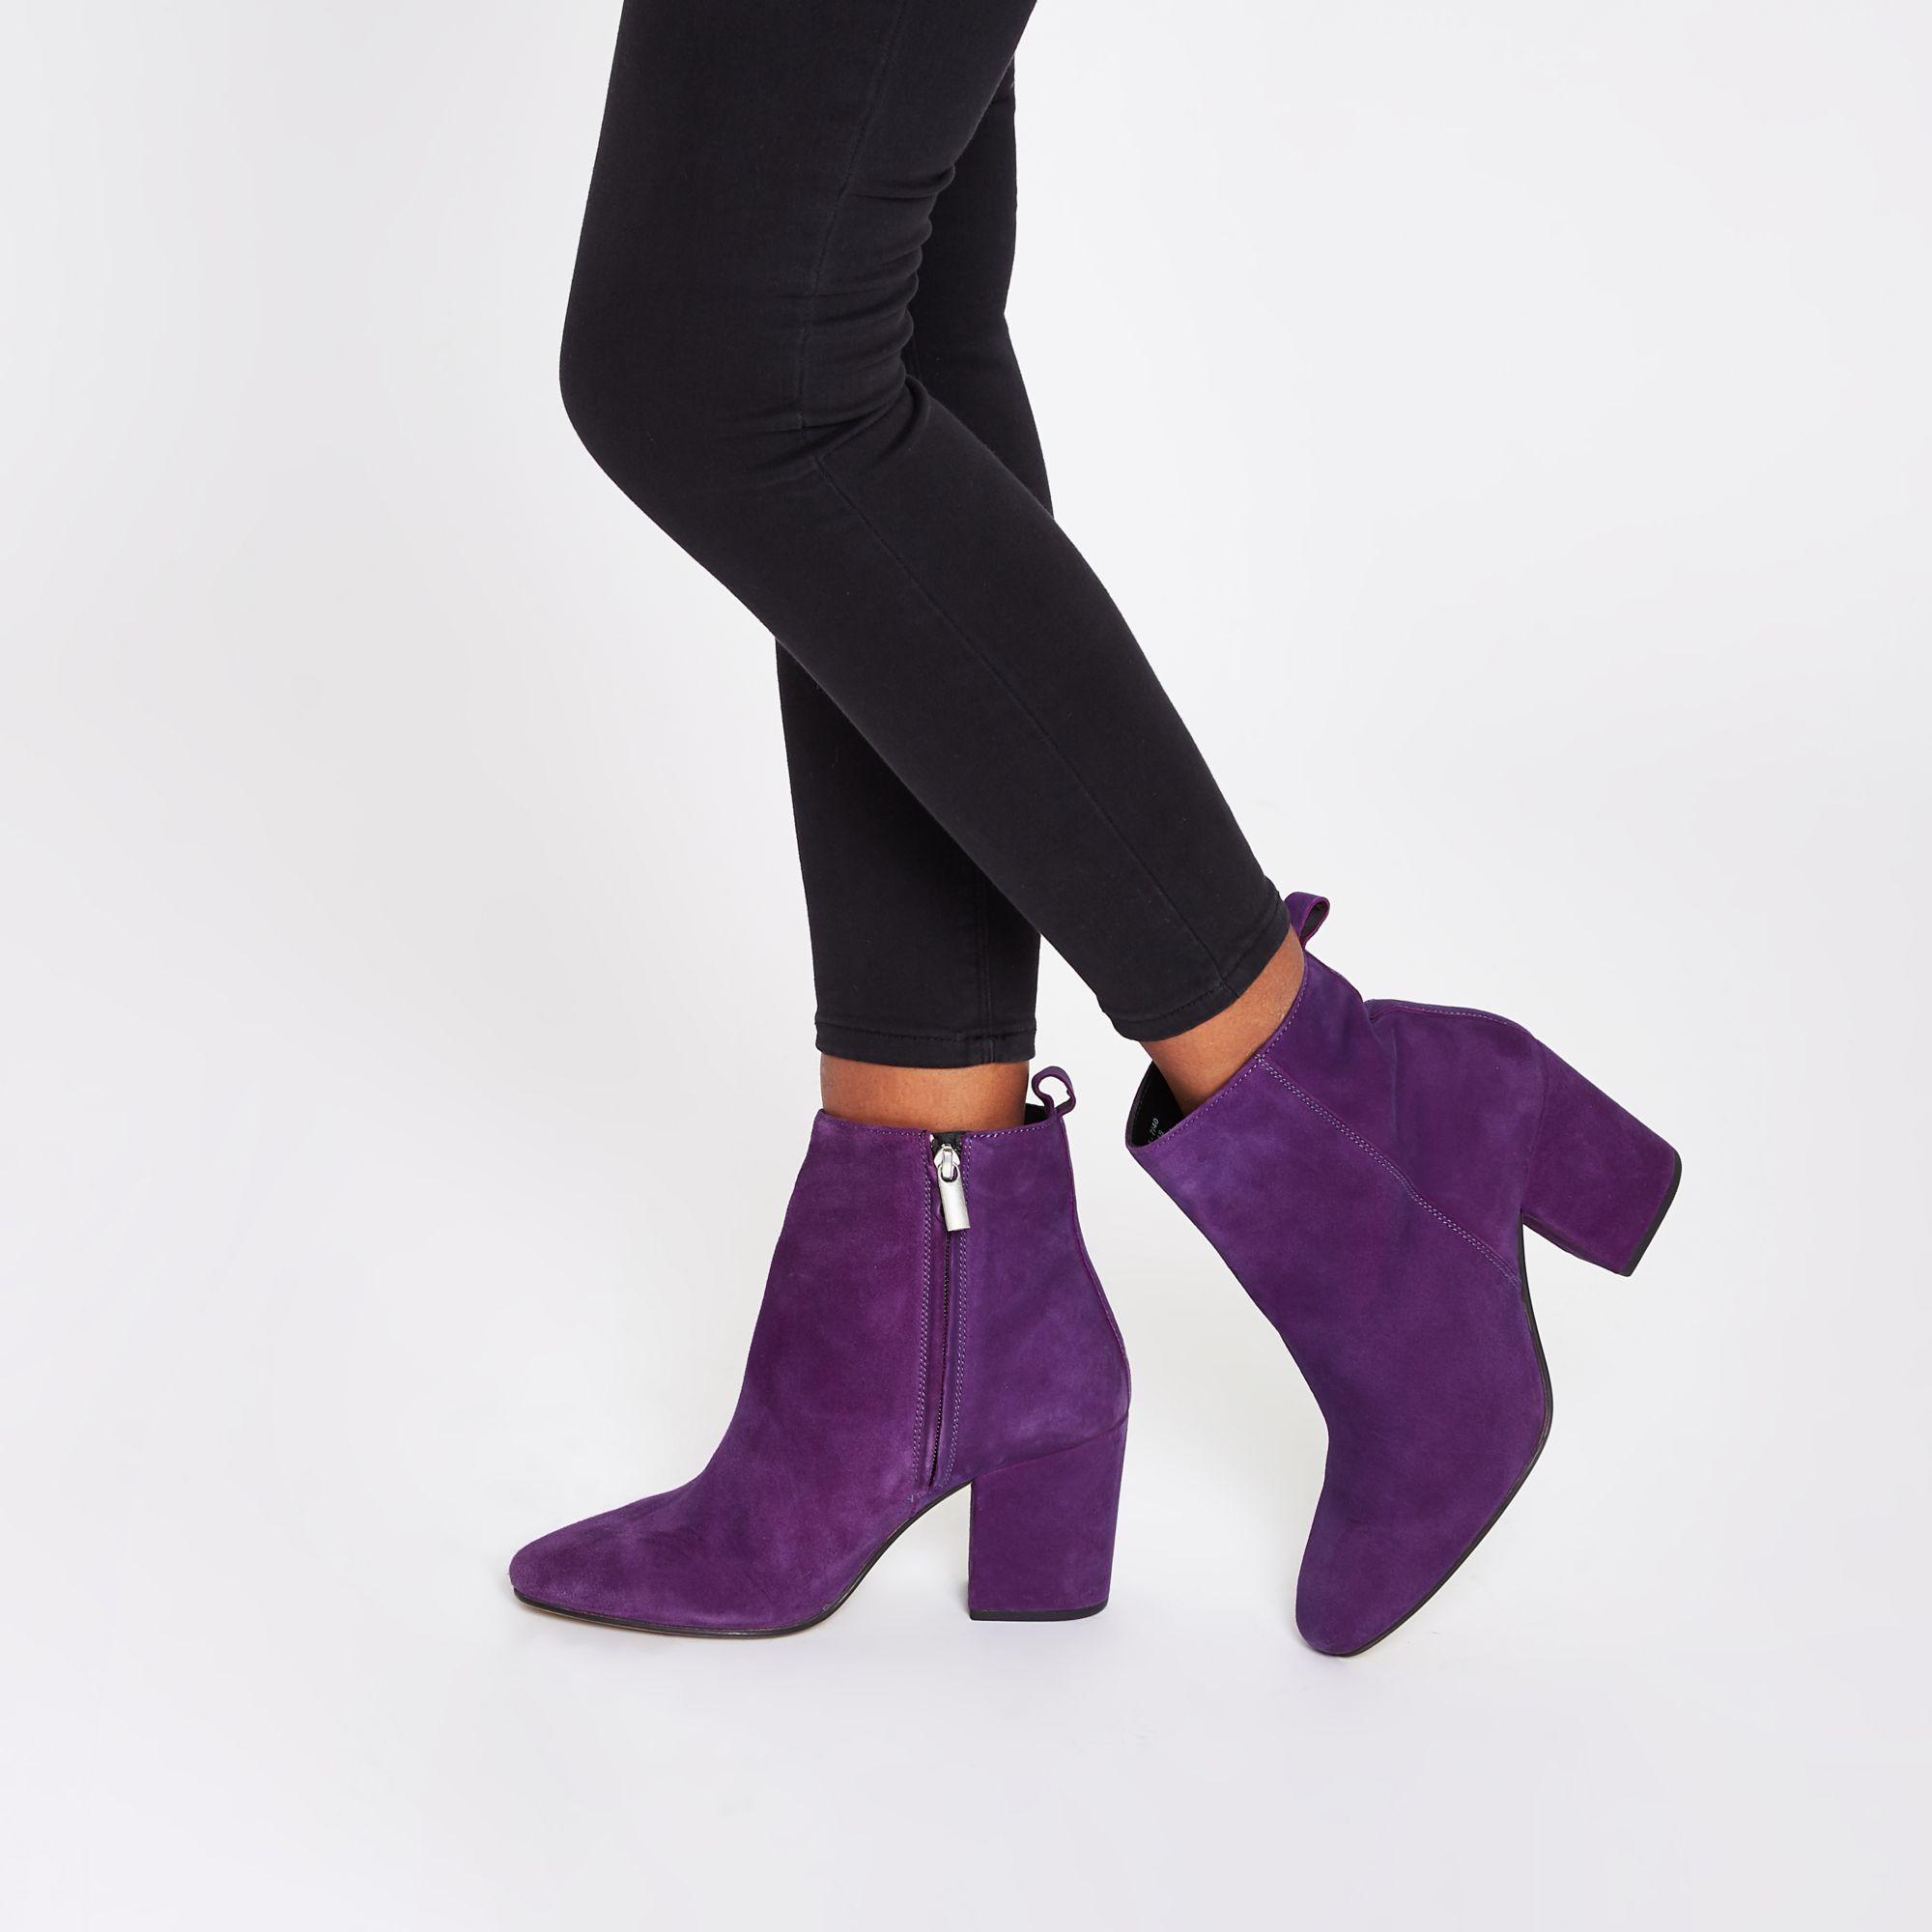 River Island Suede Block Heel Boots in Purple | Lyst